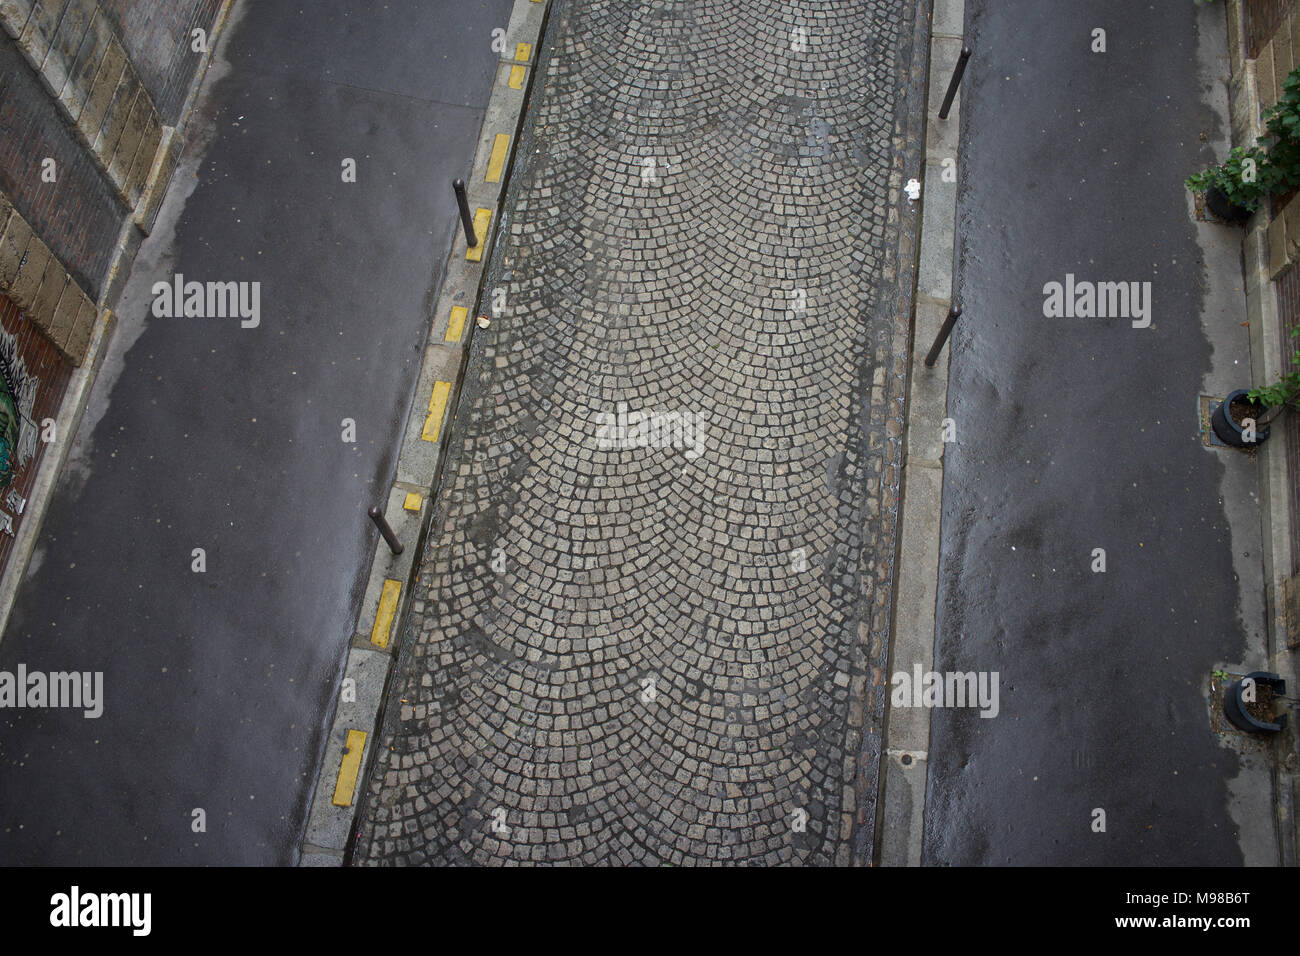 Calle adoquinada en París, Francia, vista aérea Foto de stock